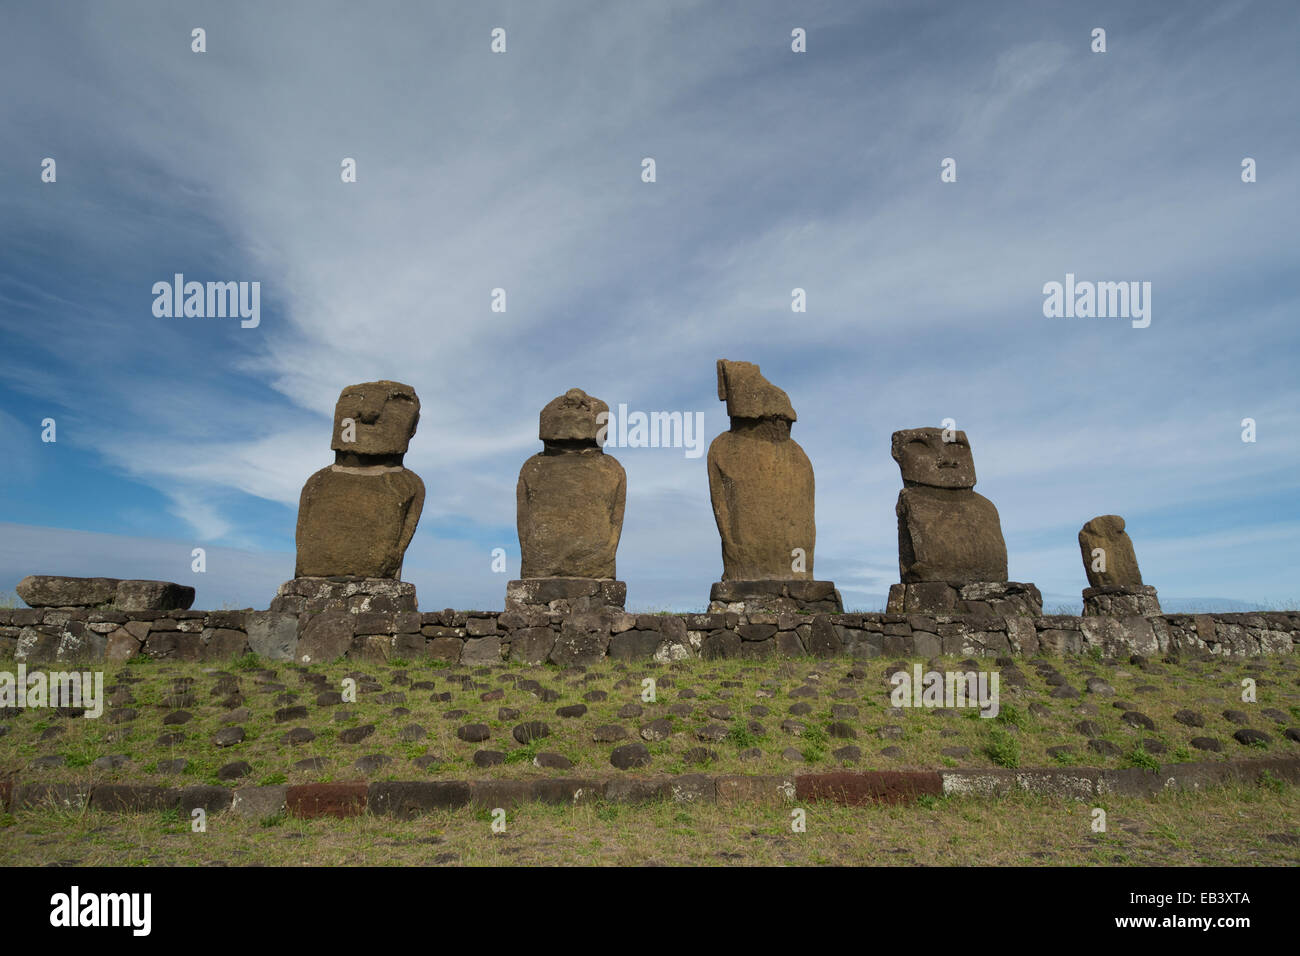 Le Chili, l'île de Pâques ou Rapa Nui, Hanga Roa. Parc national de Rapa Nui. L'ahu Tahai Ahu Vai Uri, avec plate-forme de cérémonie. Banque D'Images